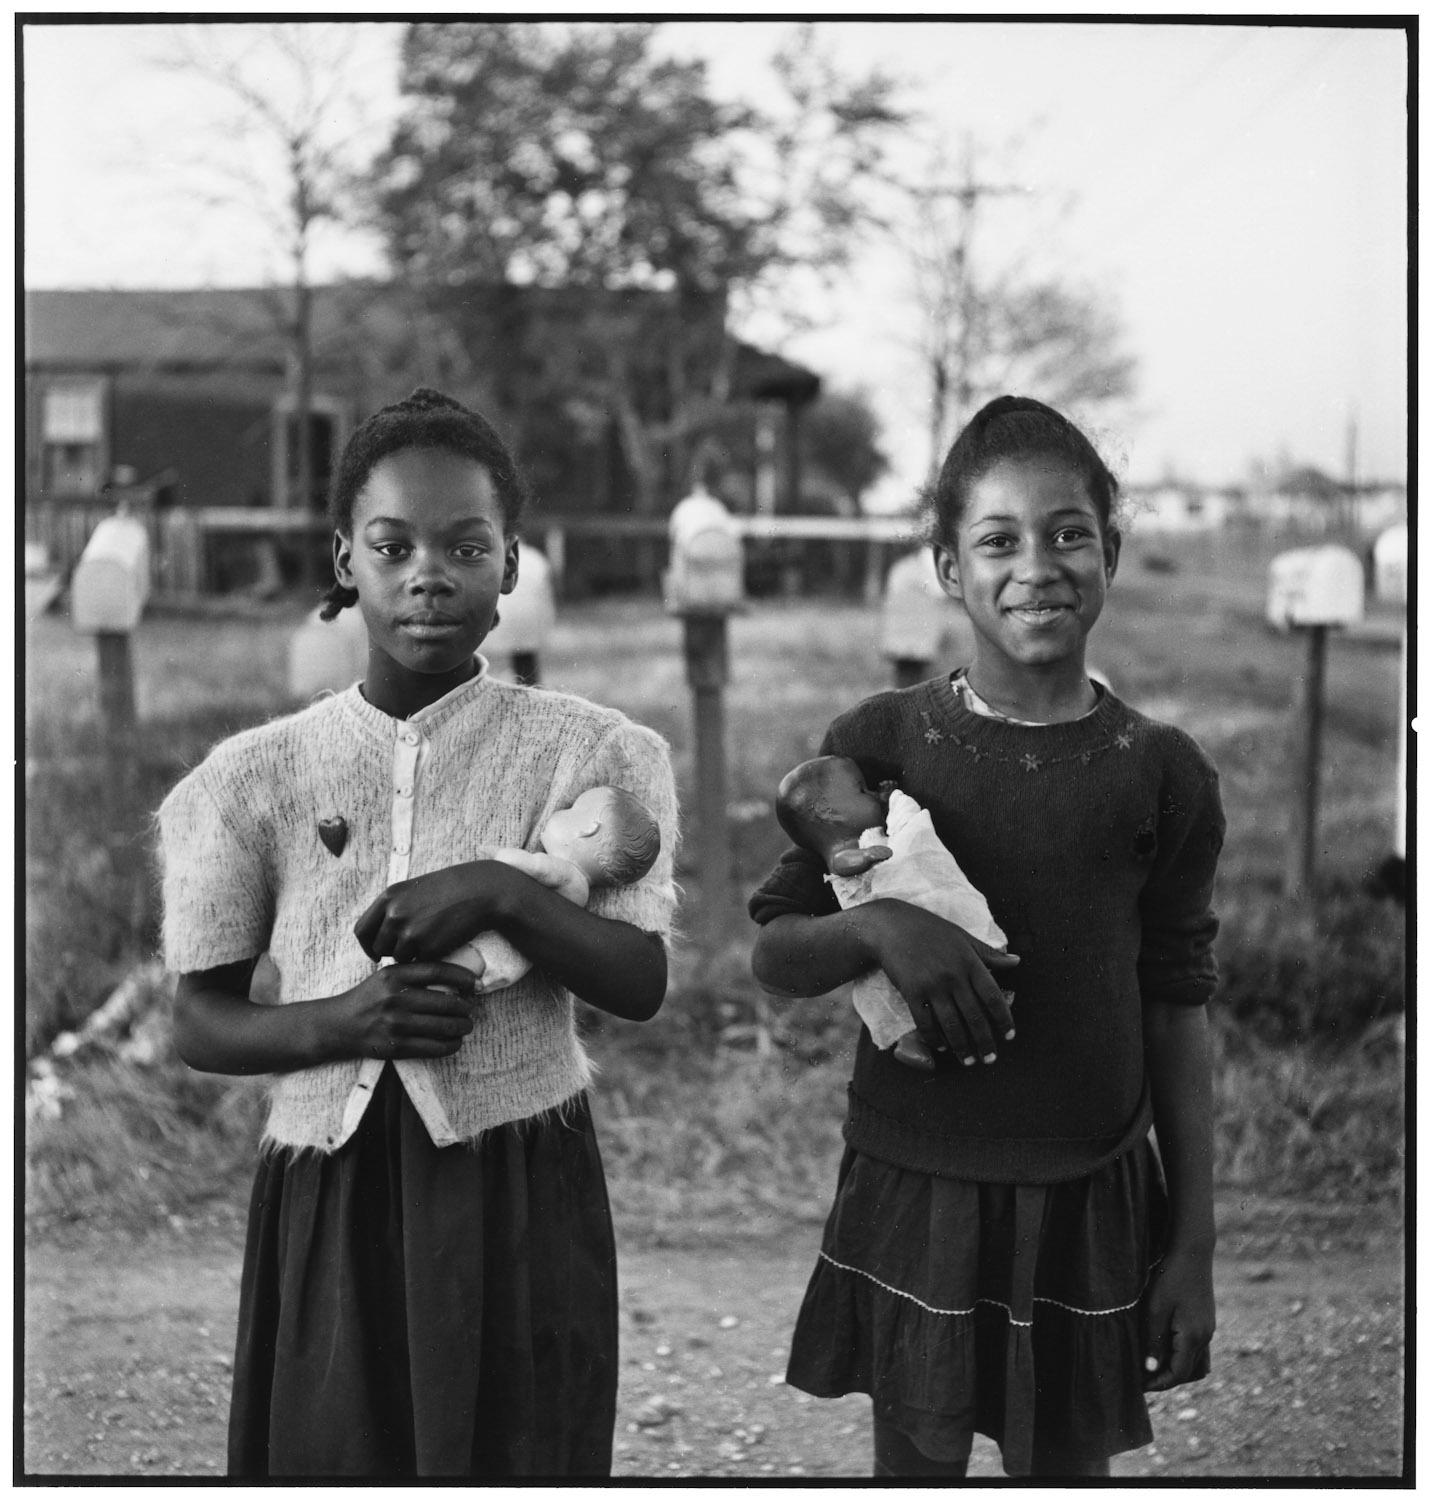 USA, New Orleans, Louisiana, 1947 - Elliott Erwitt (Schwarz-Weiß-Fotografie)
Signiert, betitelt und datiert auf dem beiliegenden Etikett des Künstlers
Silbergelatineabzug, später gedruckt

Erhältlich in vier Größen:
11 x 14 Zoll
16 x 20 Zoll
20 x 24